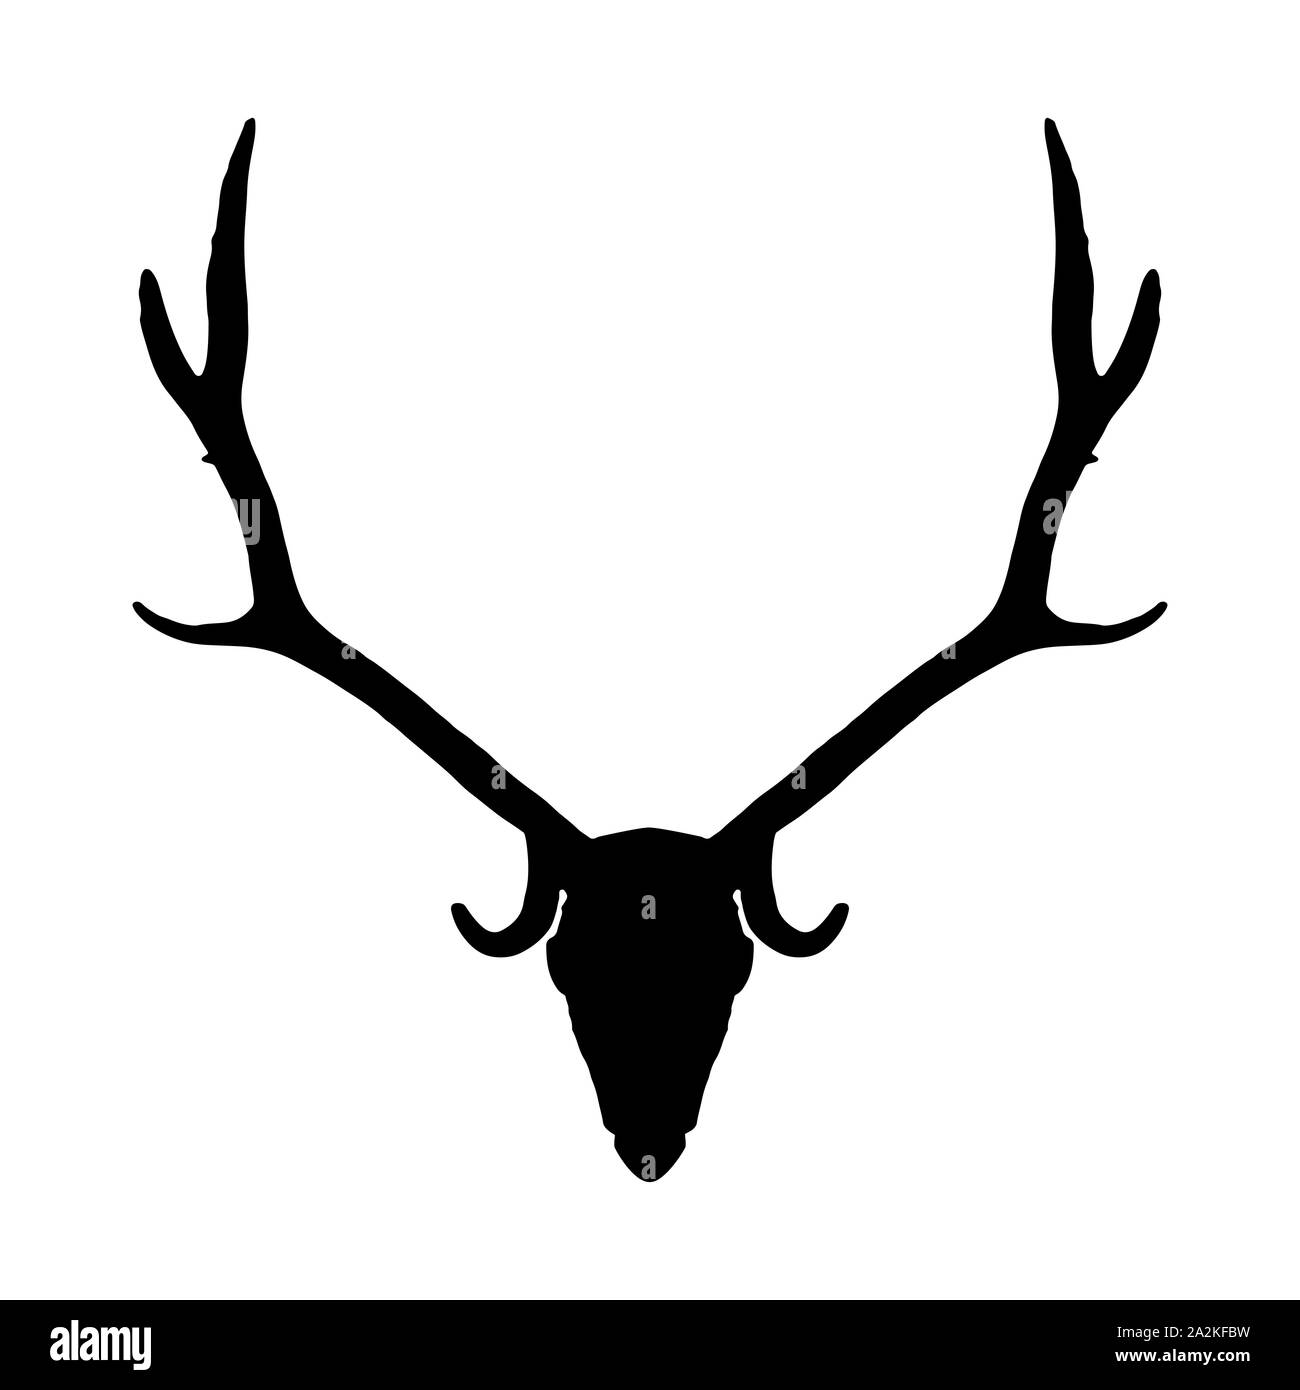 Crâne de chevreuil avec de longues cornes isolé sur fond blanc. Tête d'Animal icône silhouette noire Banque D'Images